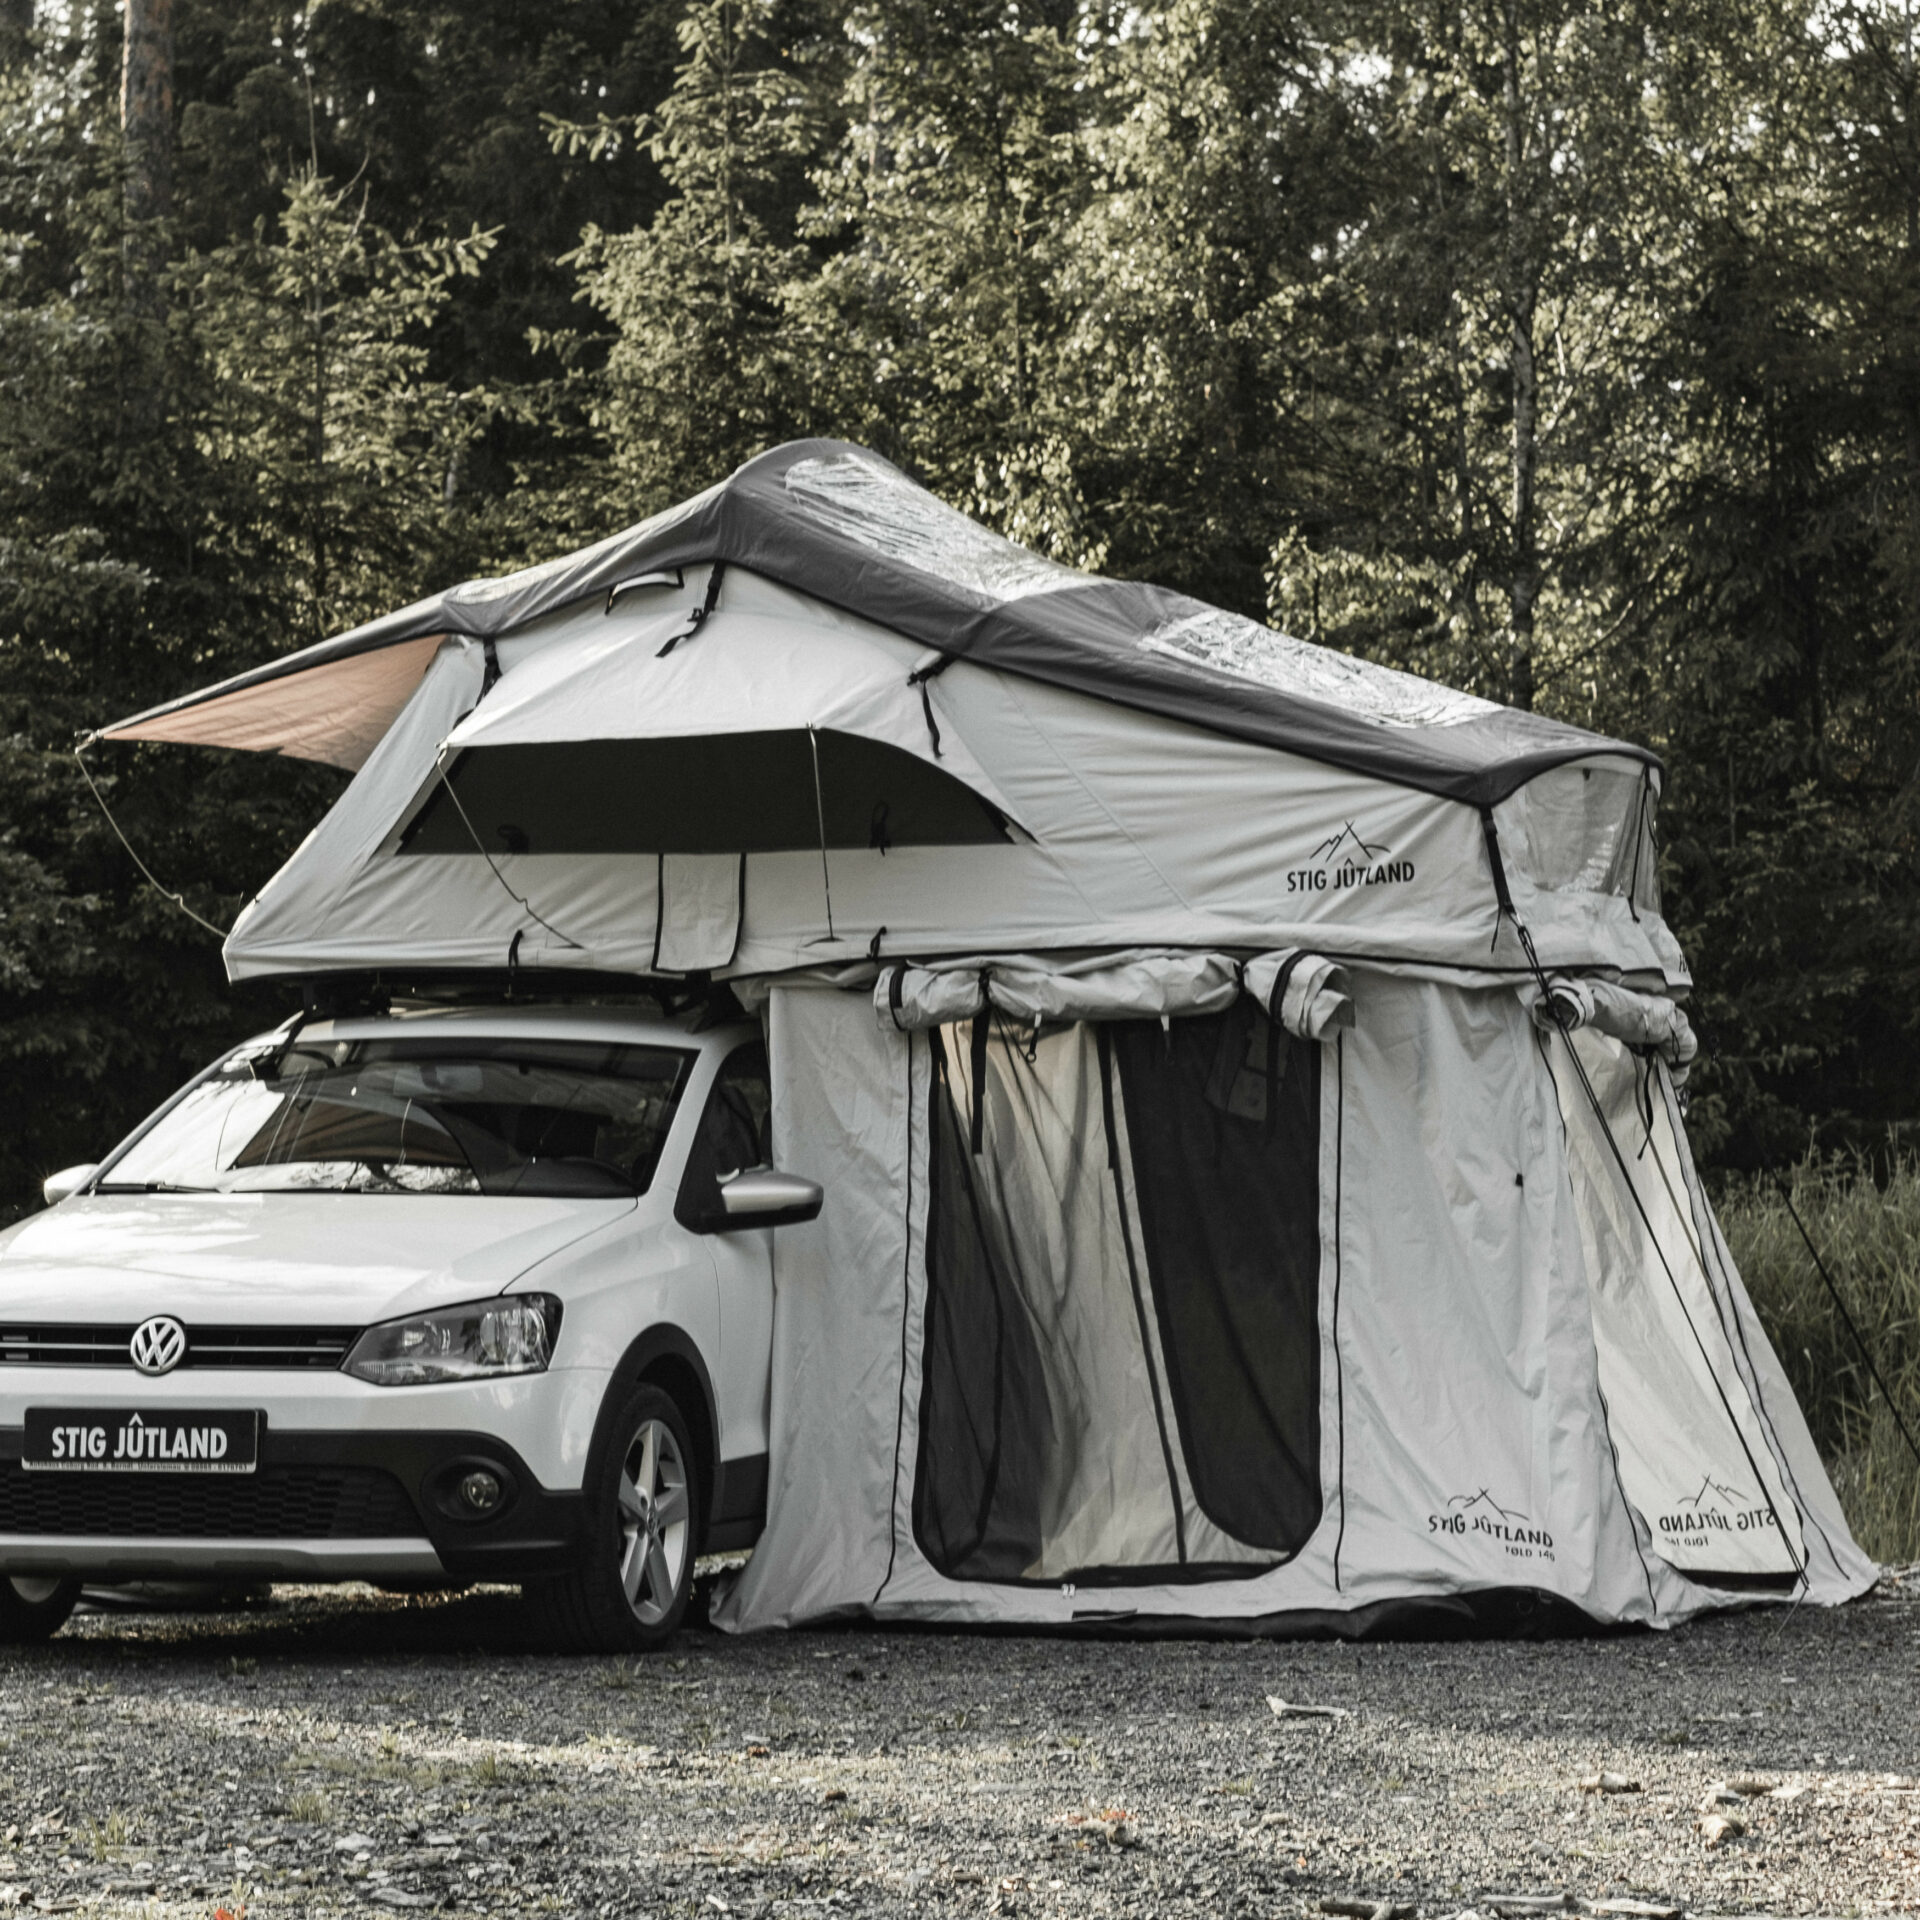 STIG JÛTLAND FØLD Dachzelt auf VW Polo mit Vorzelt online kaufen oder mieten